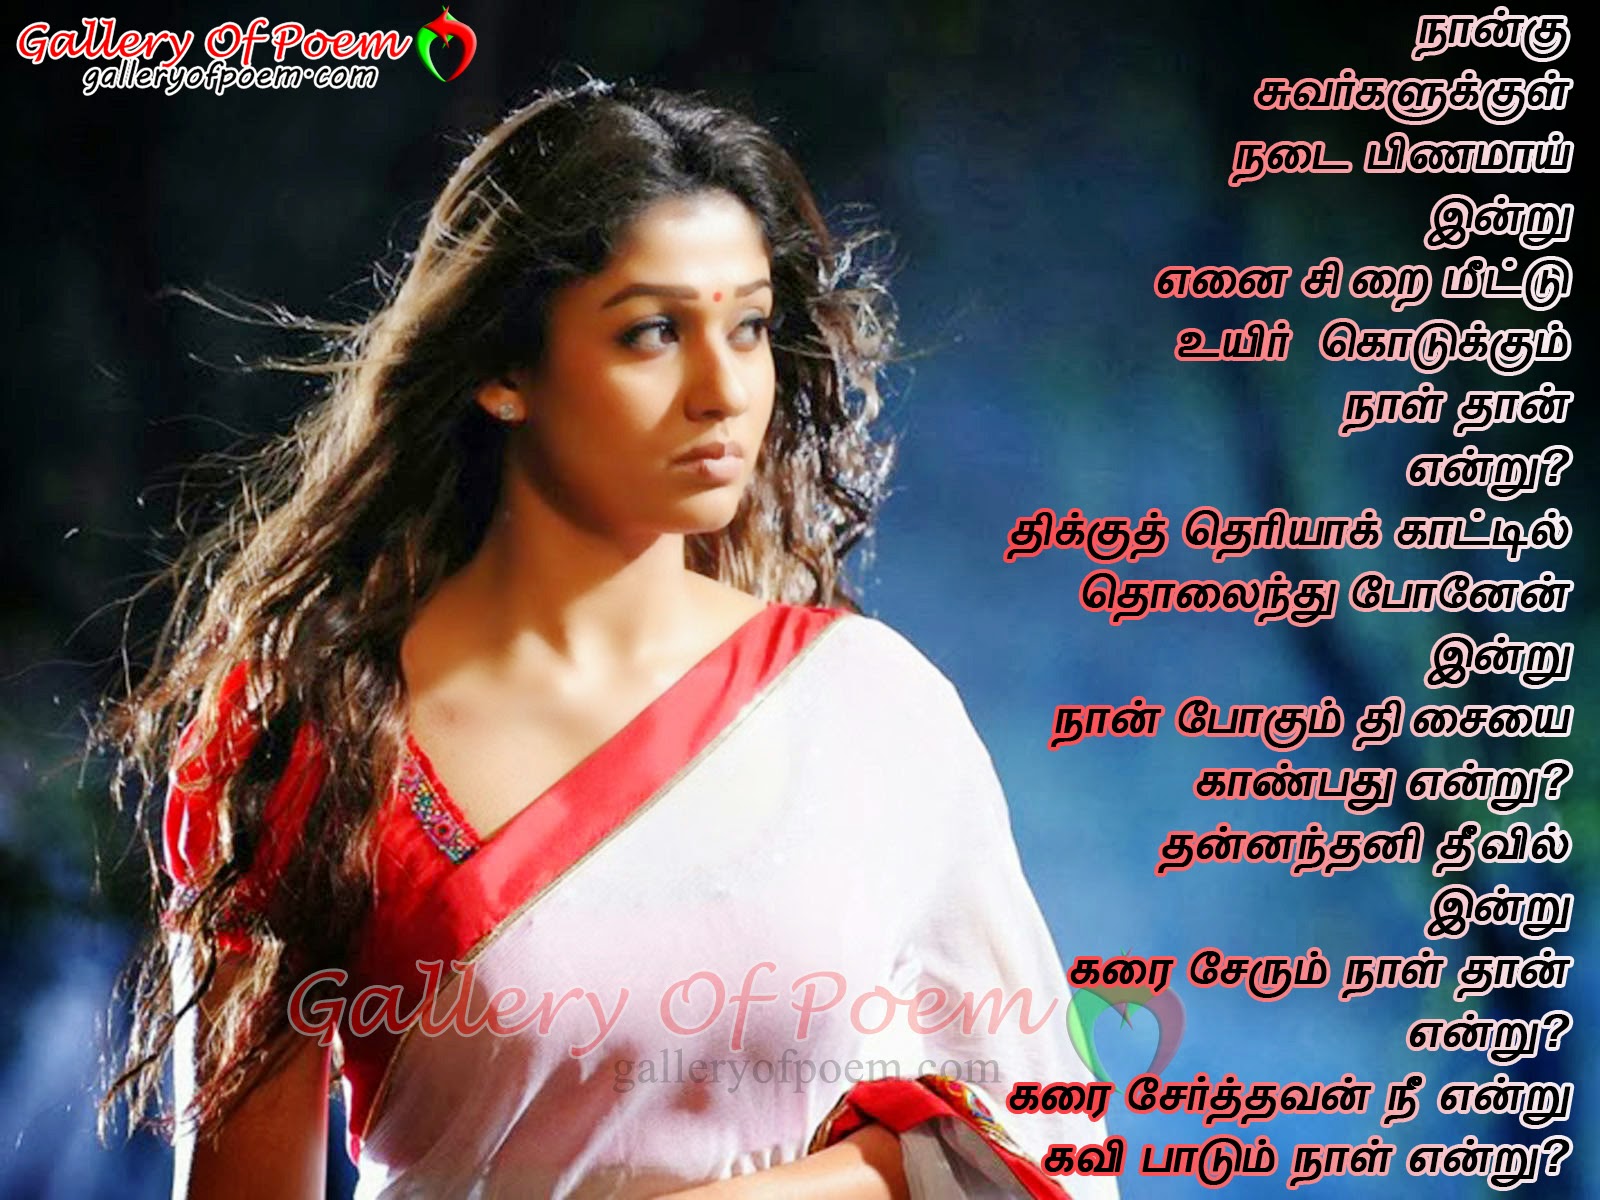 Tamil sad poem